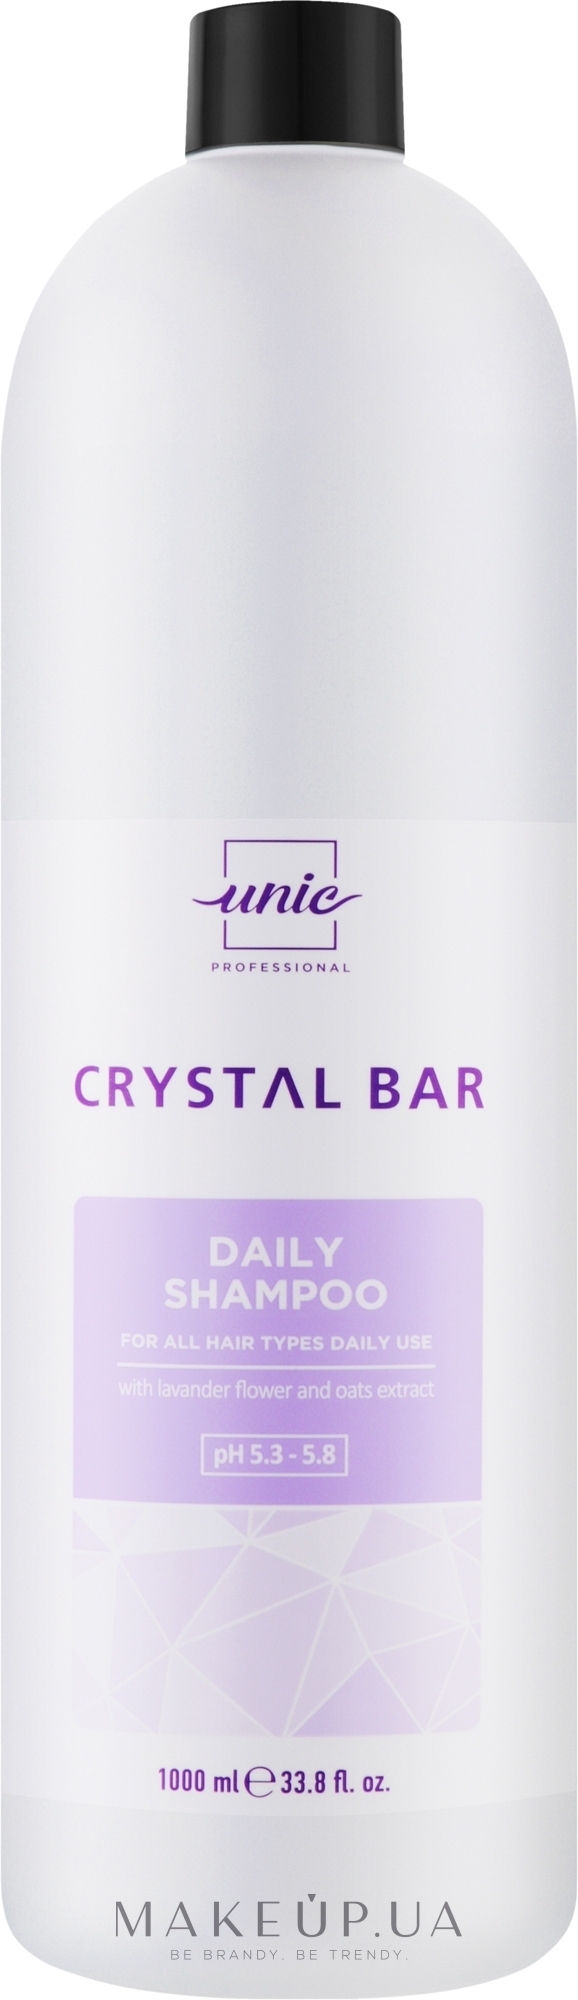 Шампунь для ежедневного использования - Unic Crystal Bar Daily Shampoo — фото 1000ml